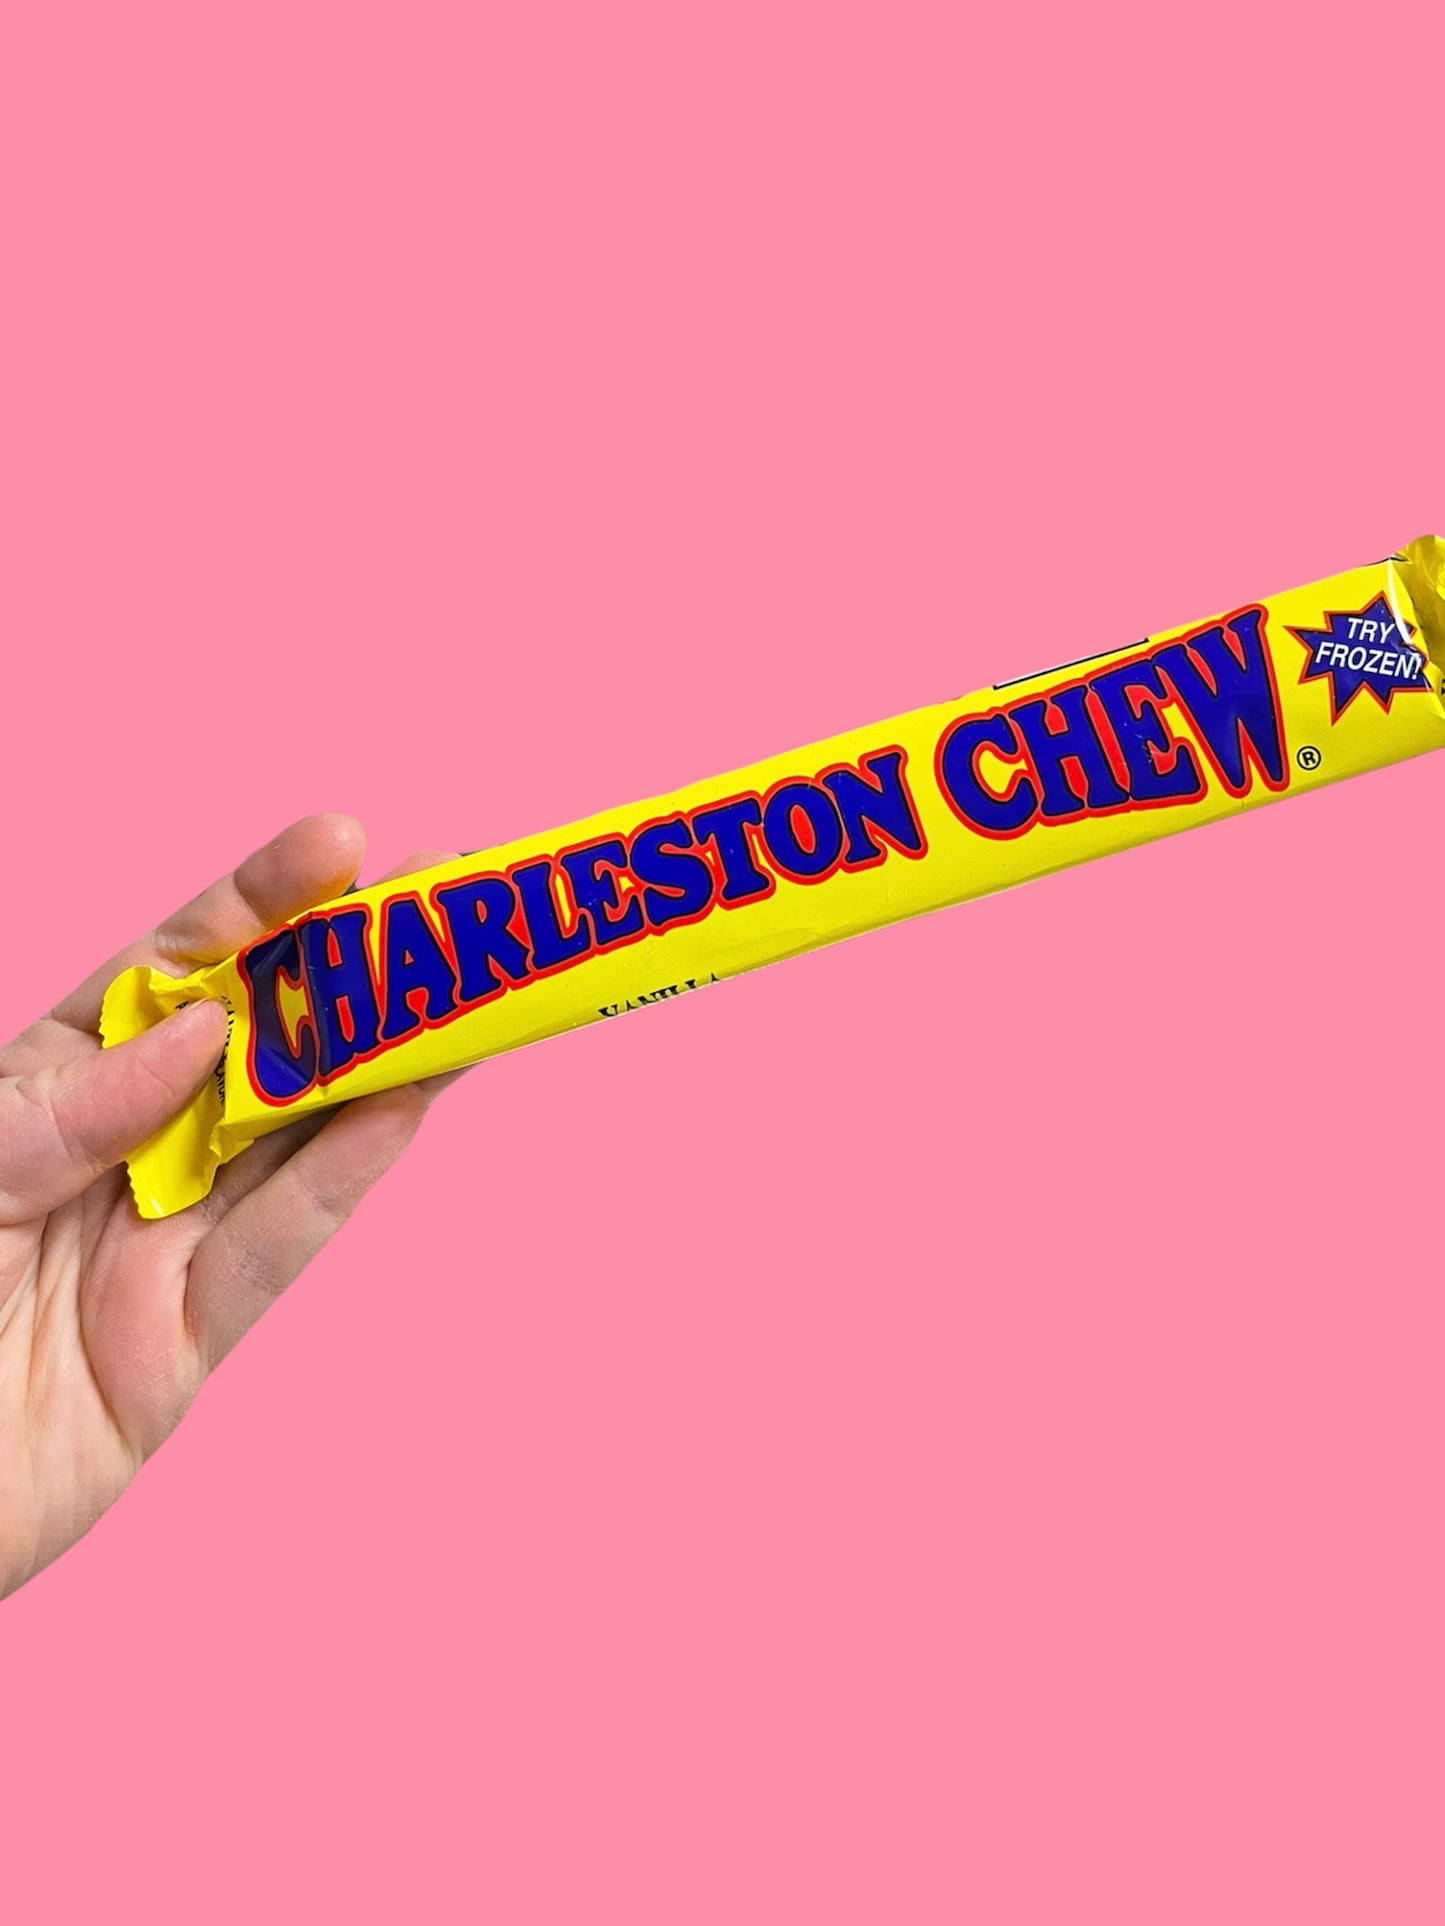 Charleston Chew - 3 varieties